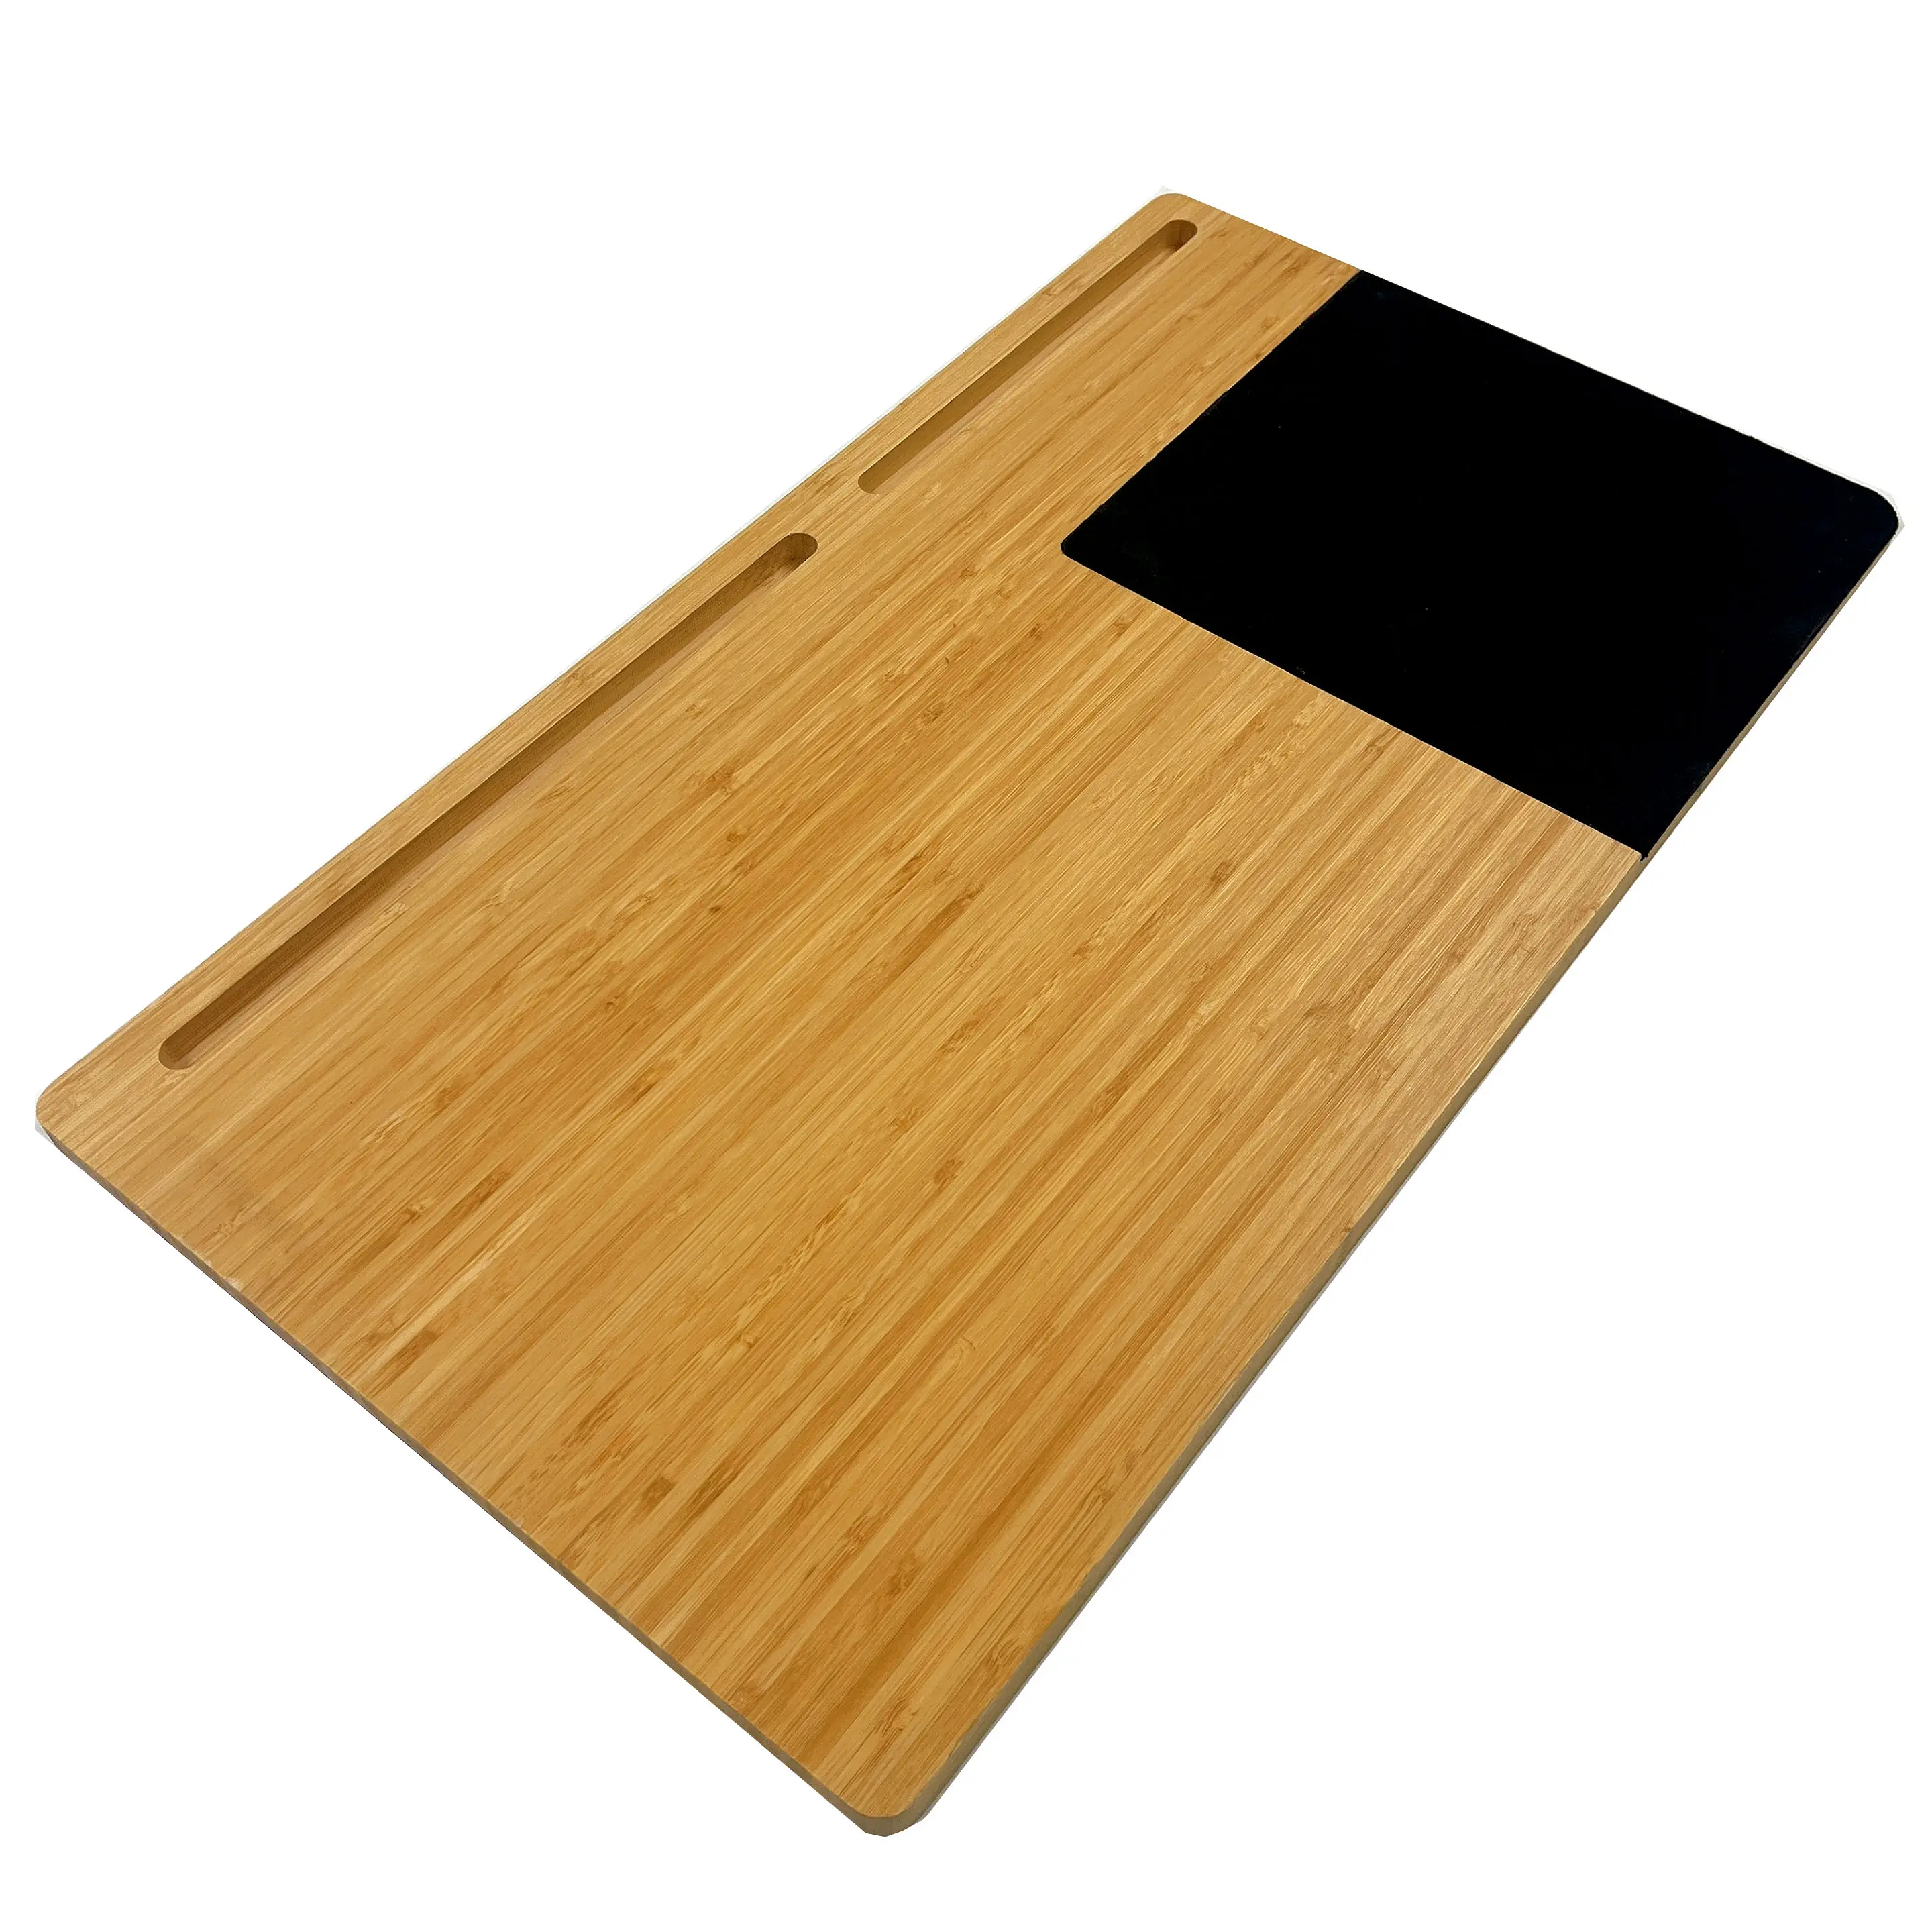 Soporte de tableta de madera Soporte de teléfono móvil de escritorio Soporte de soporte universal para teléfono móvil con tableta #2 